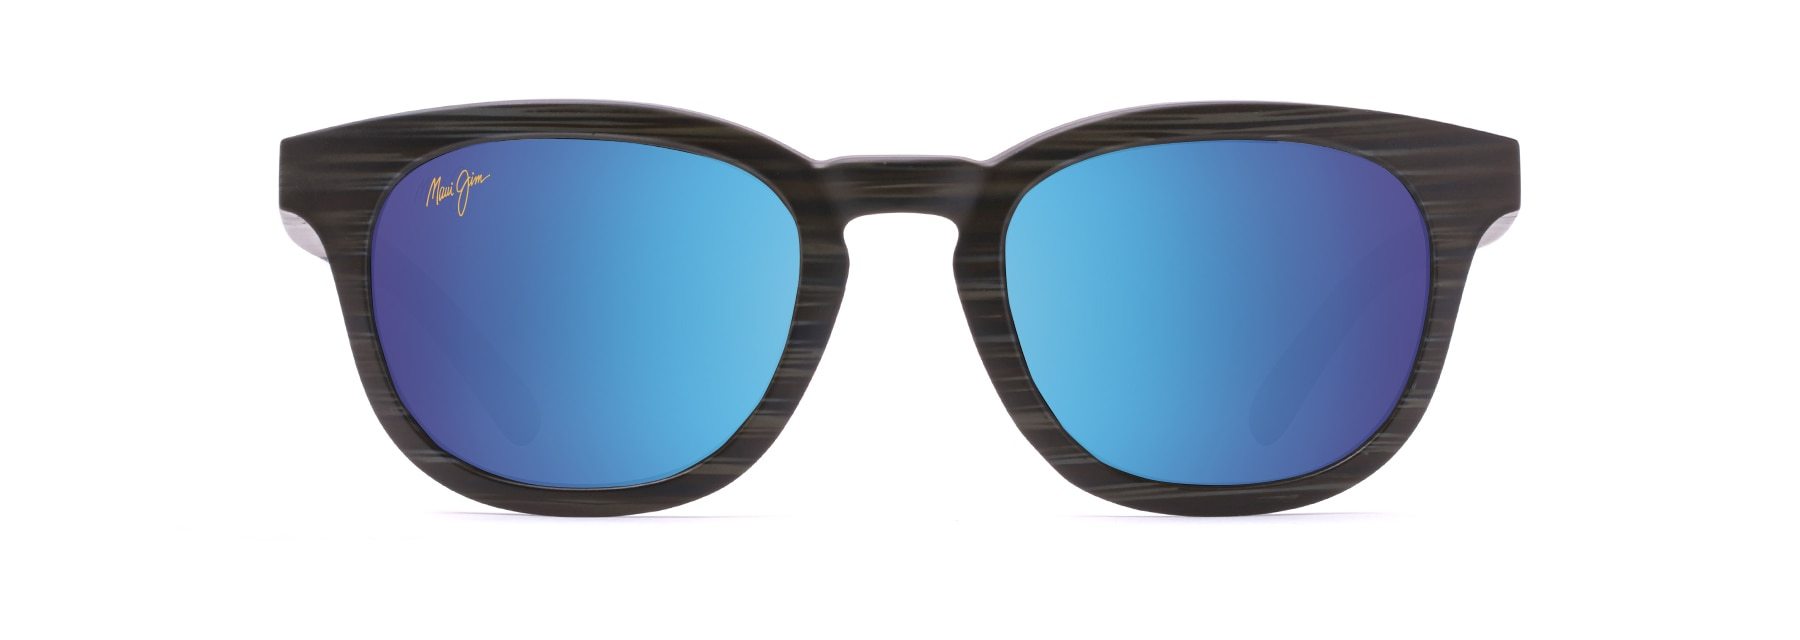 MyMaui Koko Head MM737-016 Sunglasses